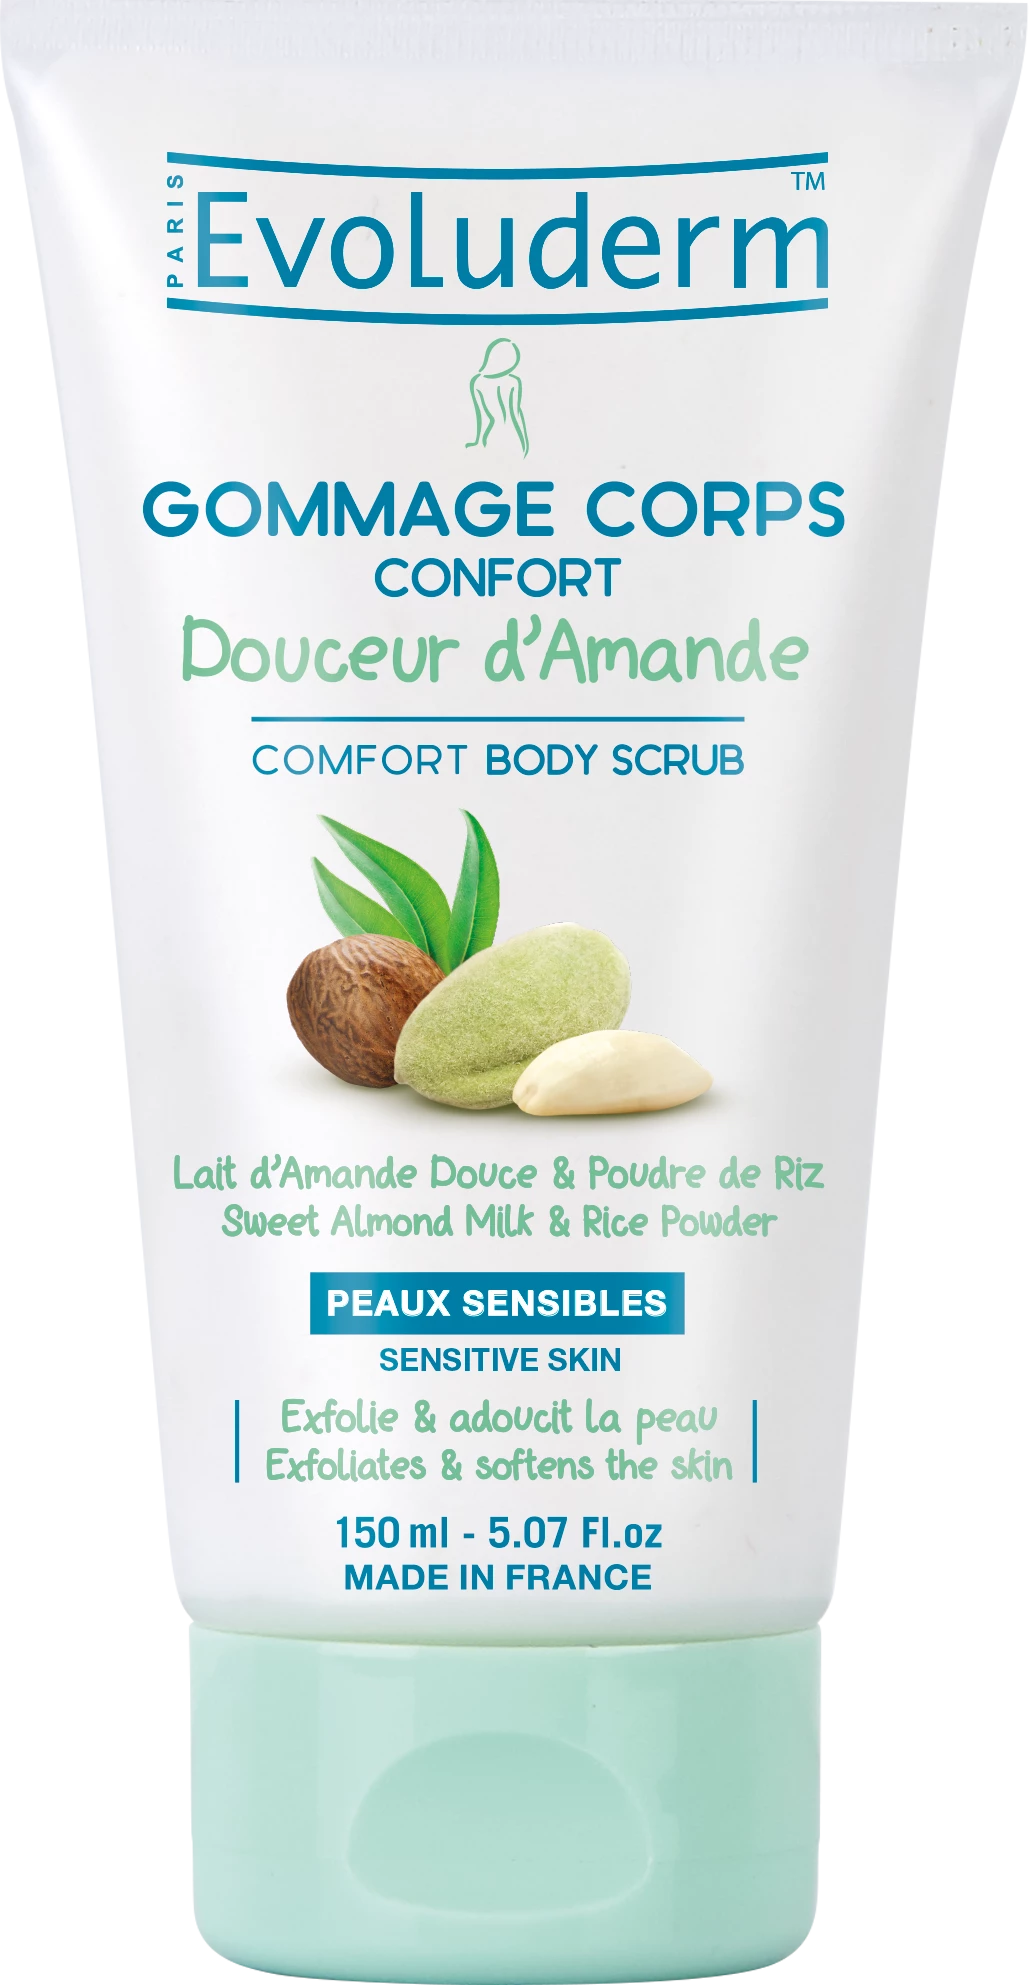 Gommage Corps Confort Douceur D'amande 150ml - Evoluderm